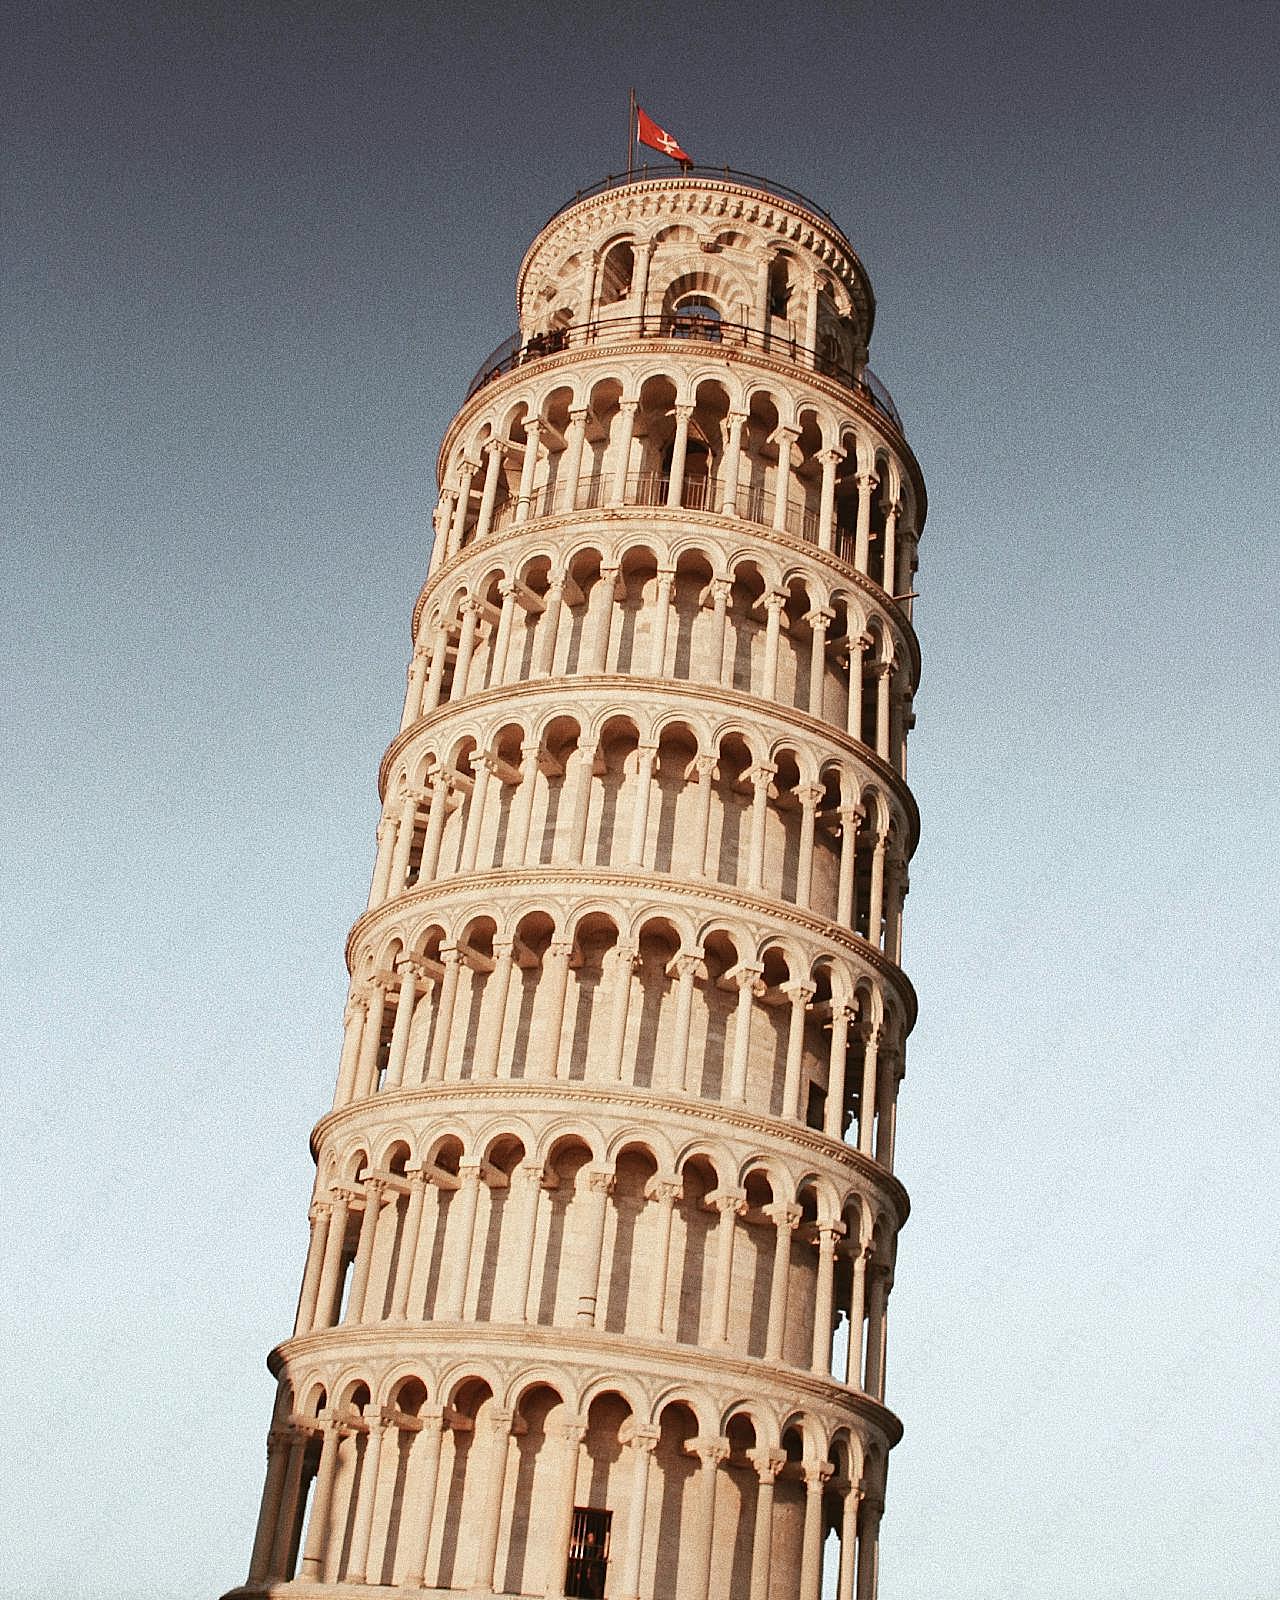 意大利比萨斜塔建筑图片特色建筑